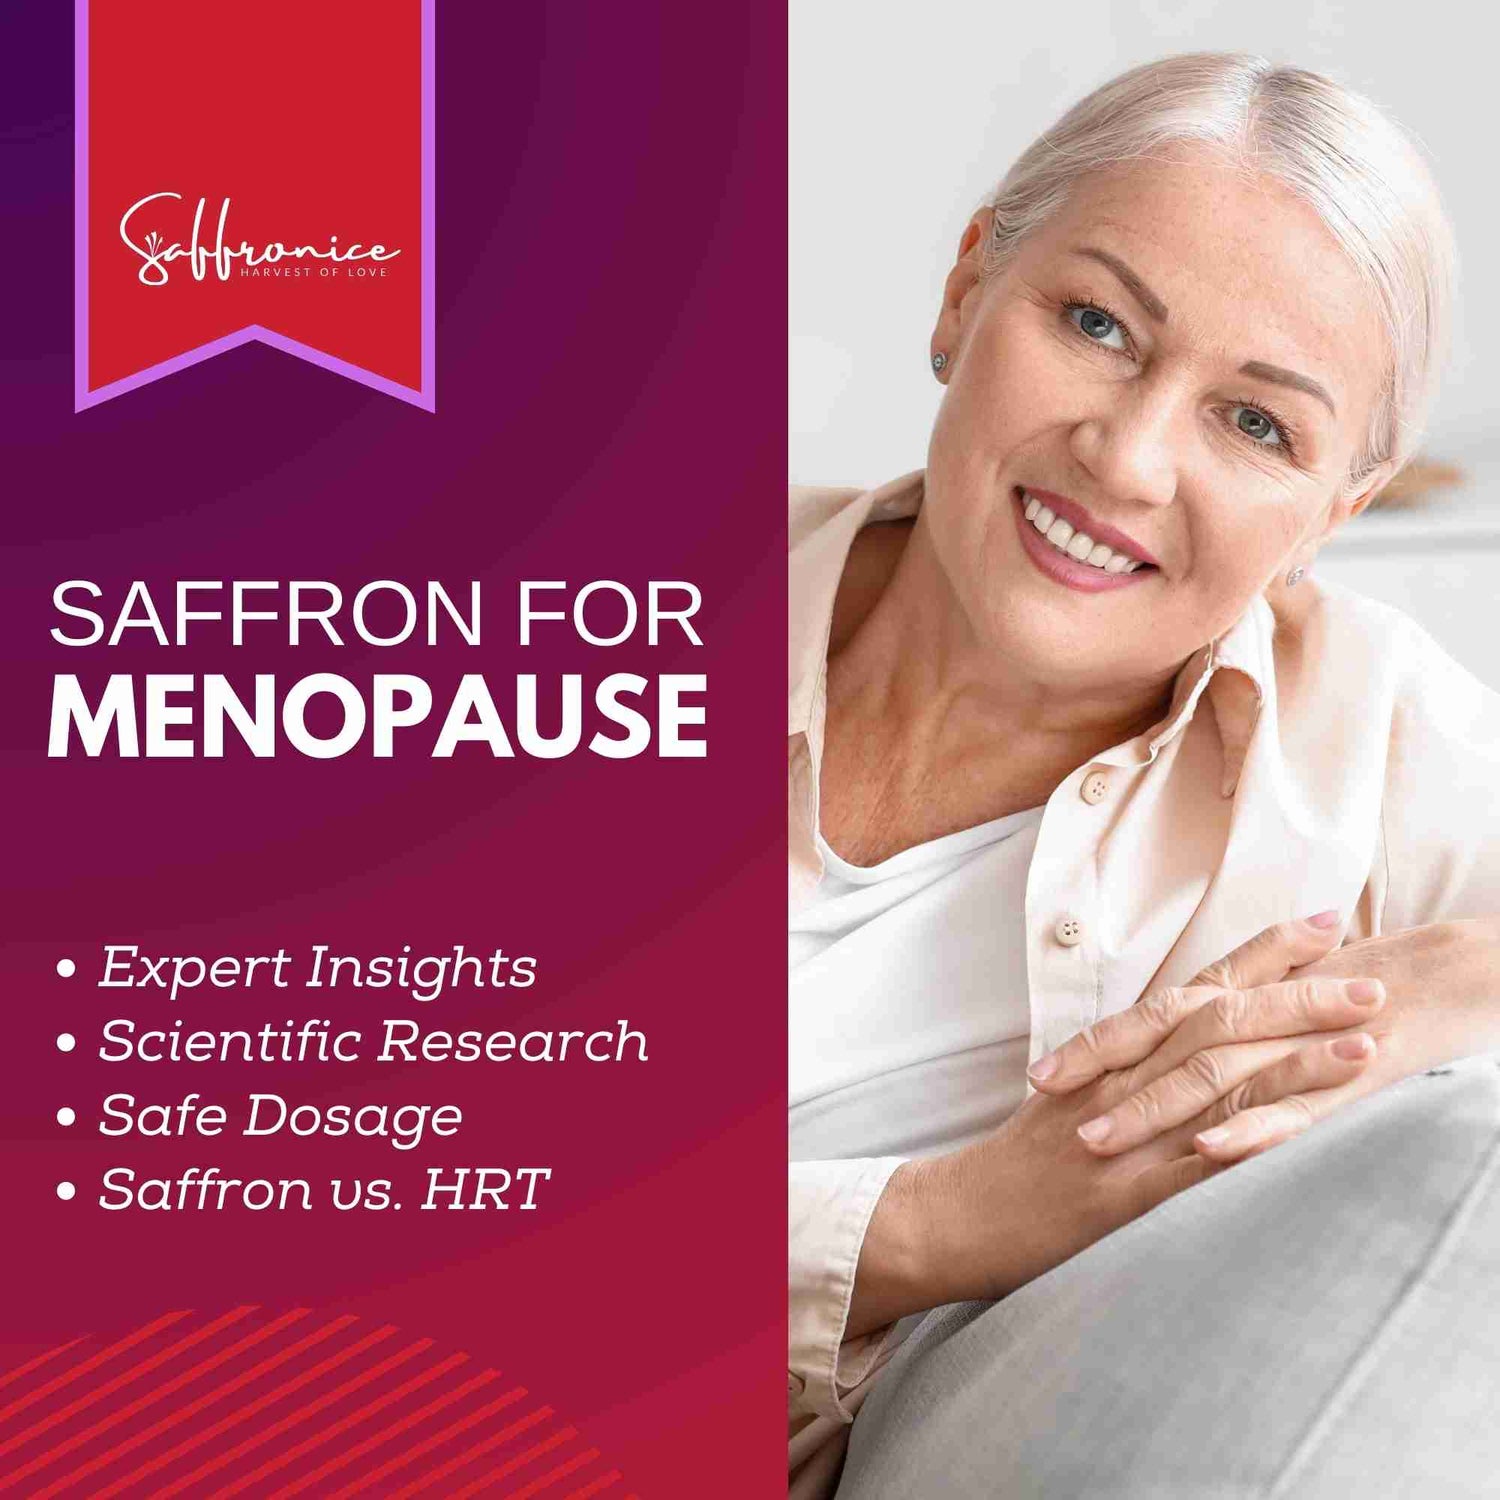 Saffron for Menopause